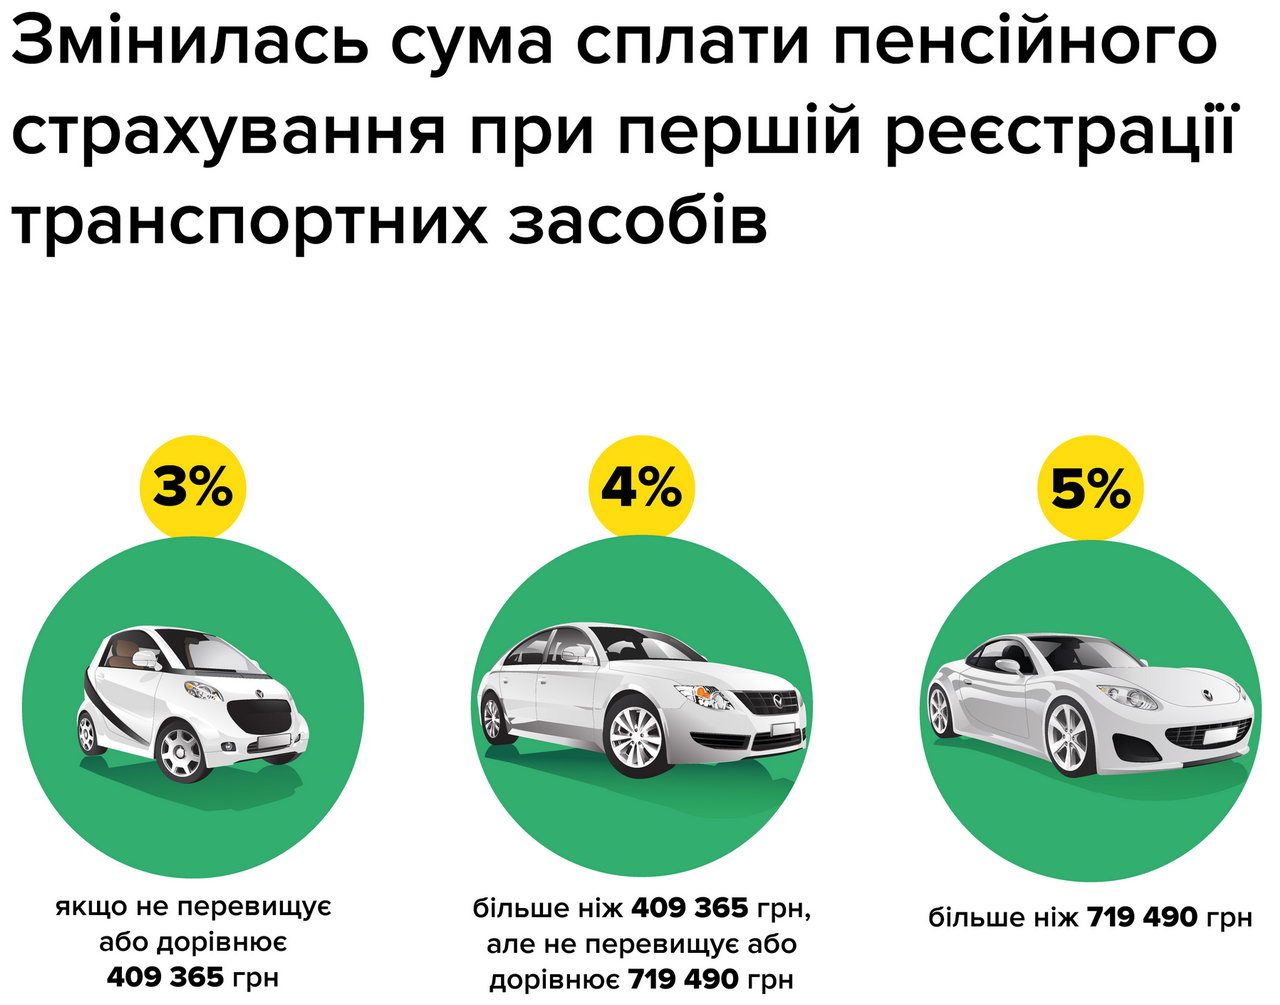 В Украине выросла стоимость первичной регистрации автомобилей